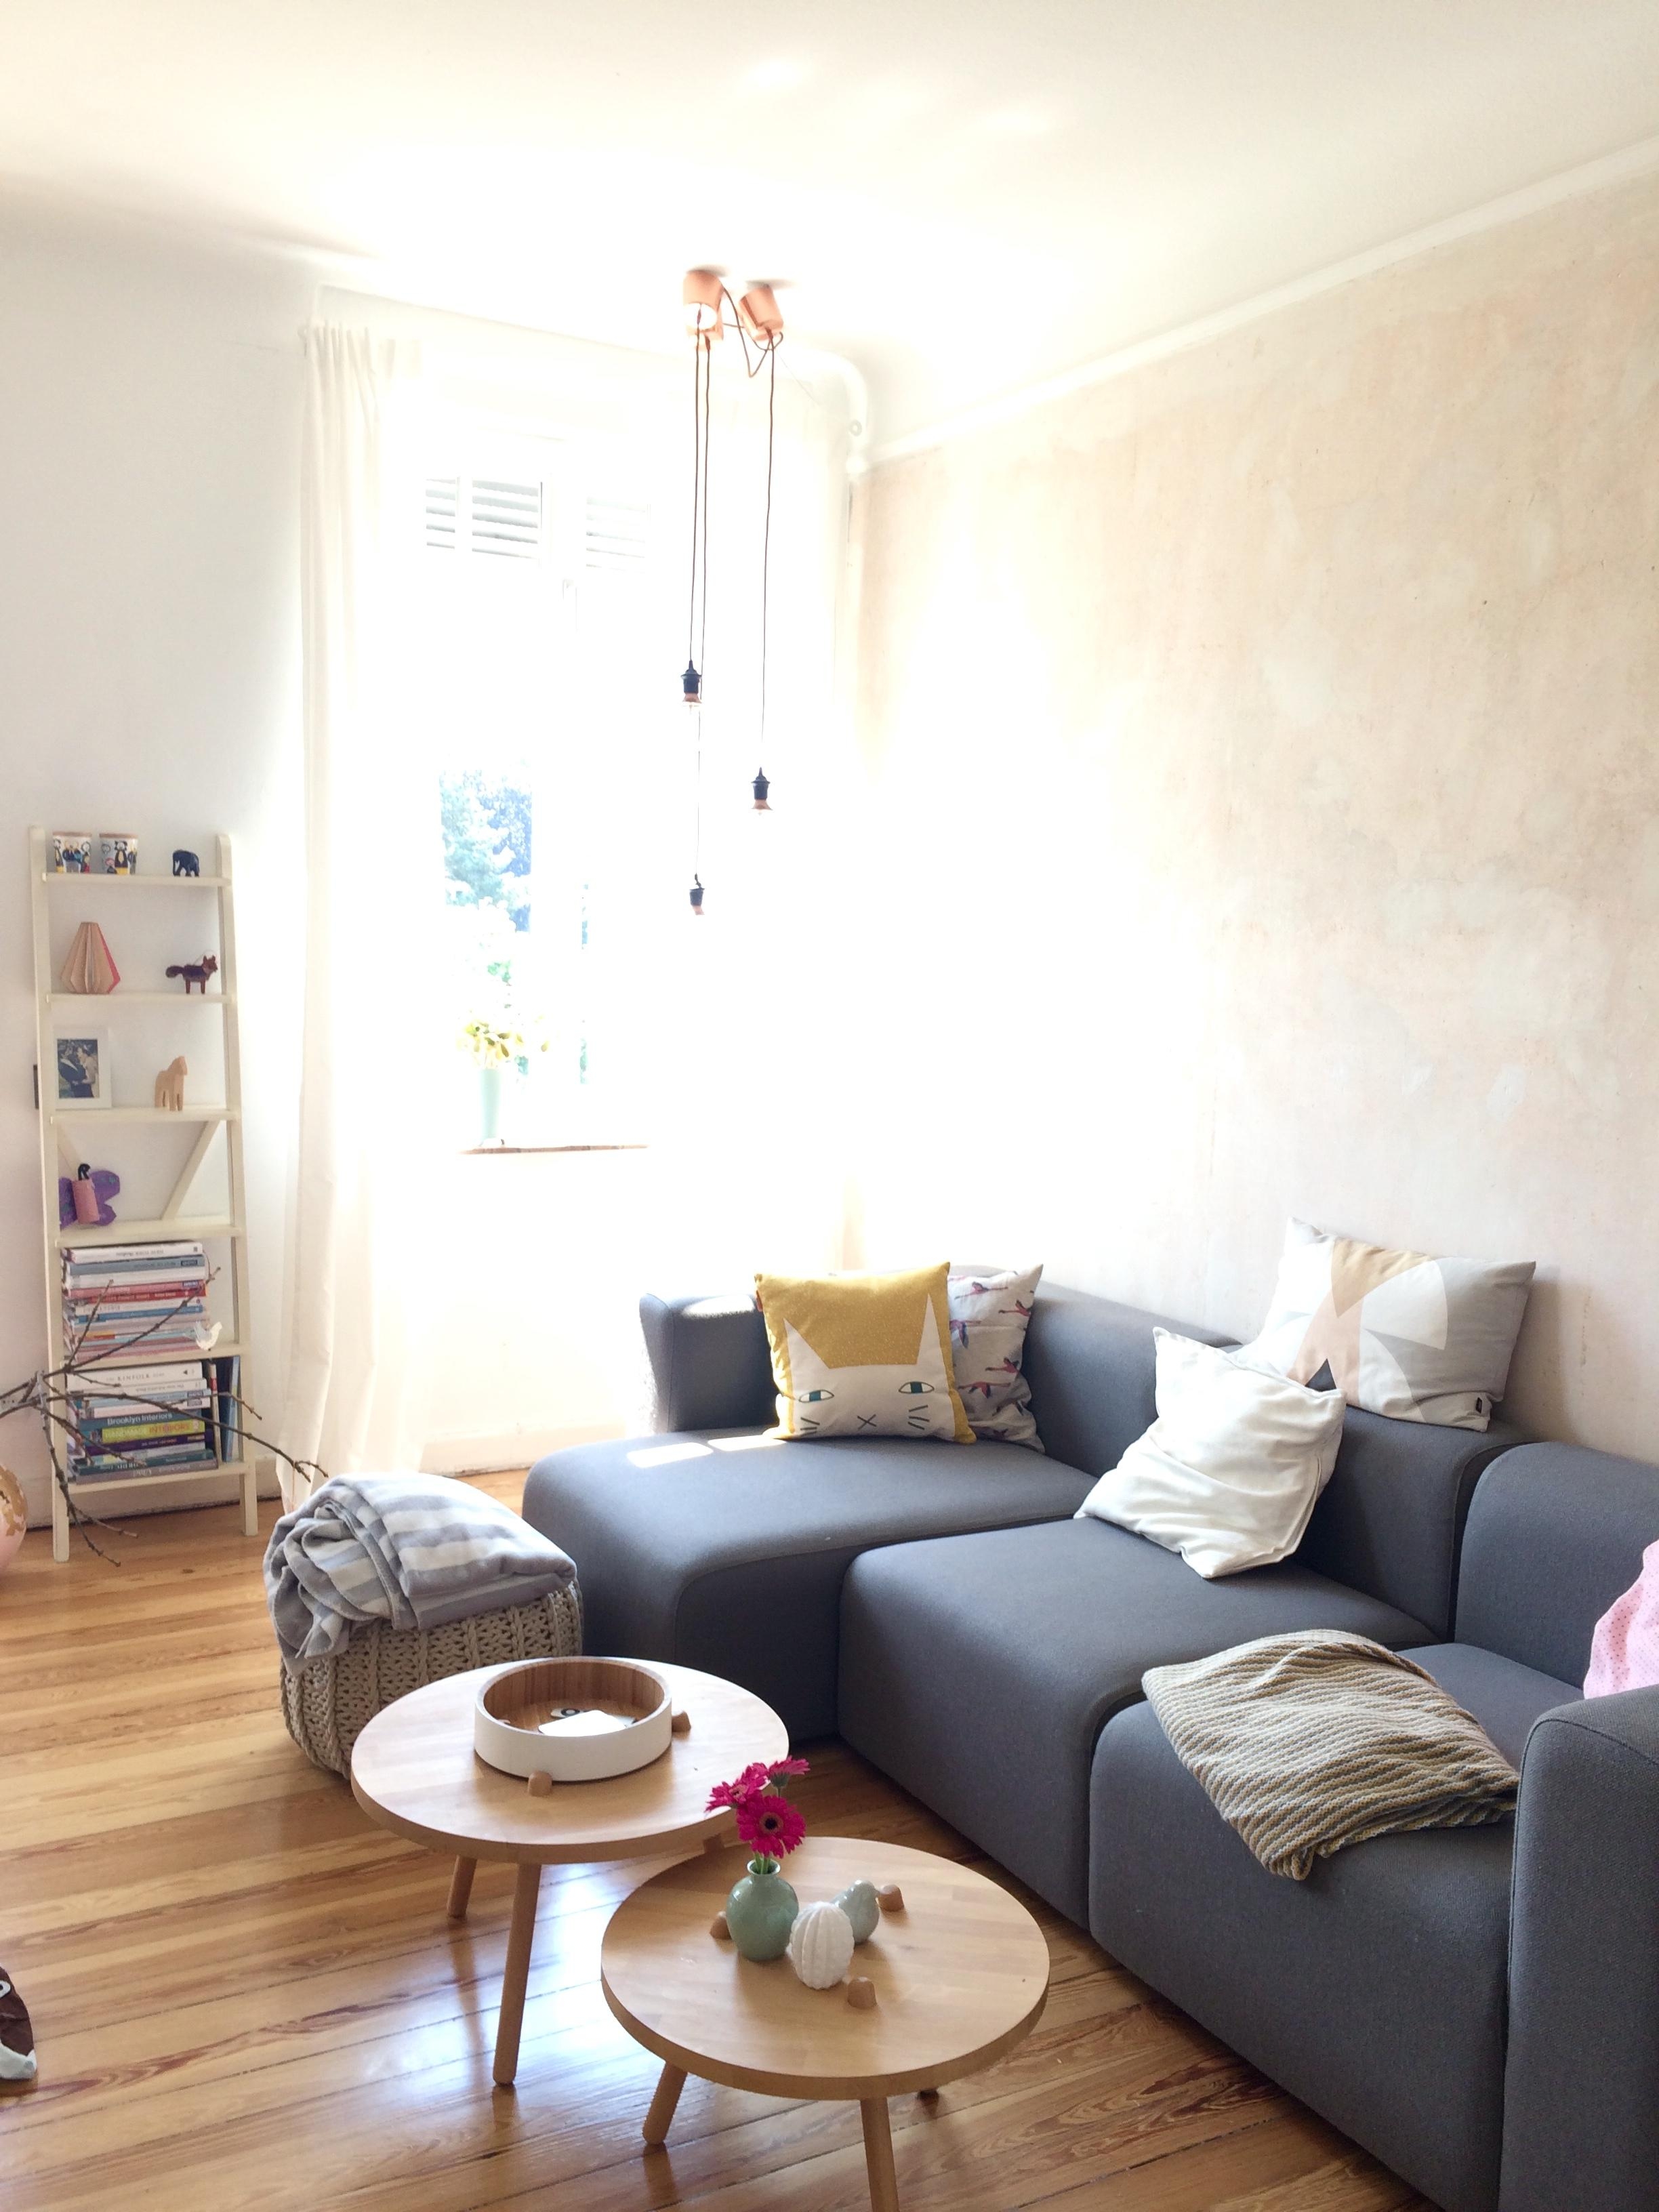 Sonnenschein im Wohnzimmer
#living #wohnzimmer #hygge #scandystyle #interior #altbau #diy #sonnenplatz #scandinavian